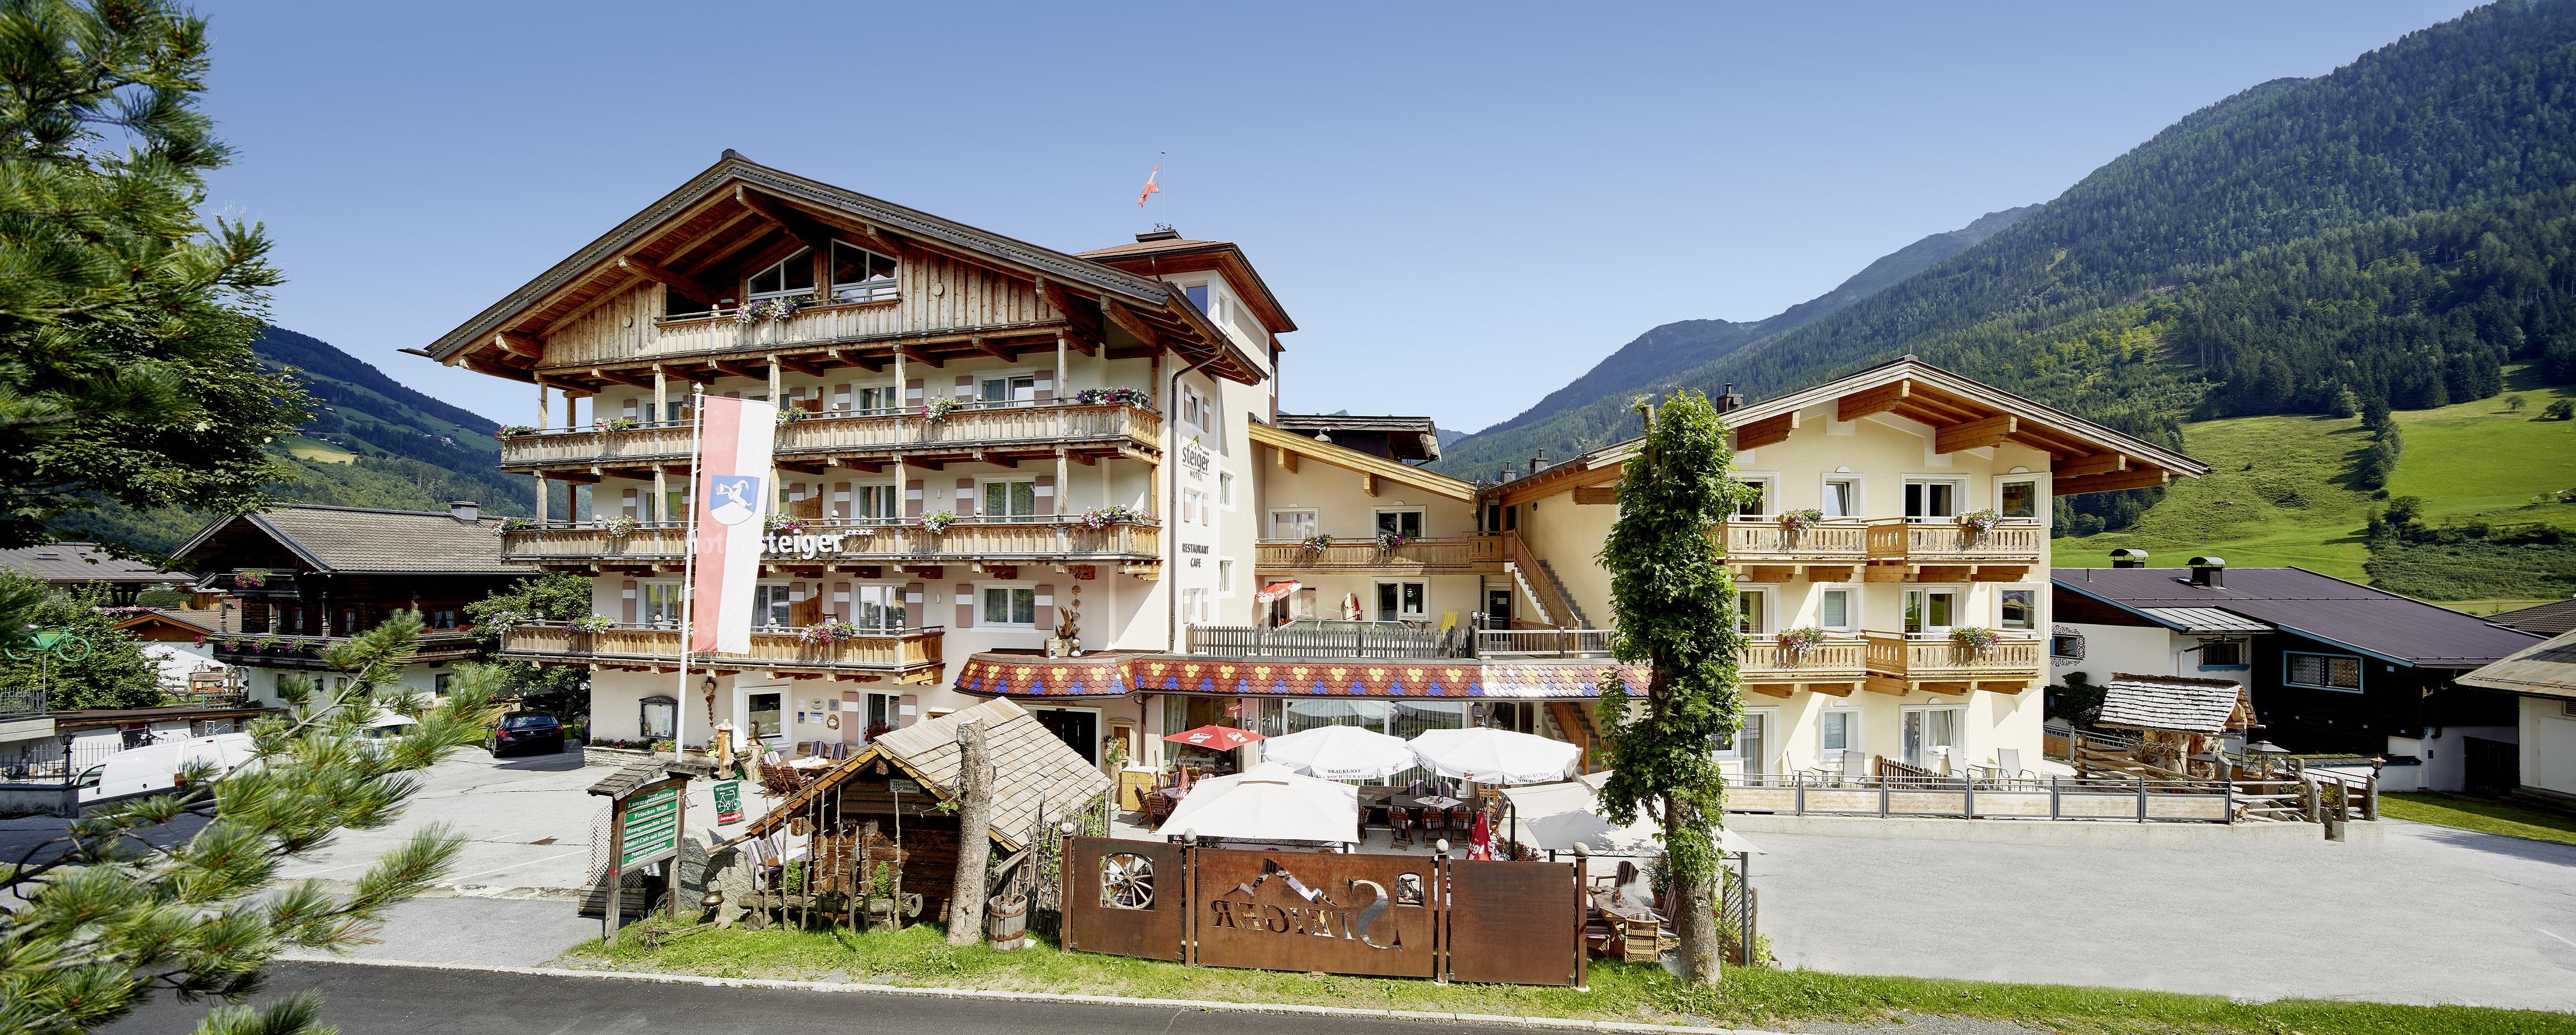 Hotel Steiger Bio-Haus, App. Nr. 403, 2 Schlafr&au Ferienwohnung  Nationalpark Hohe Tauern